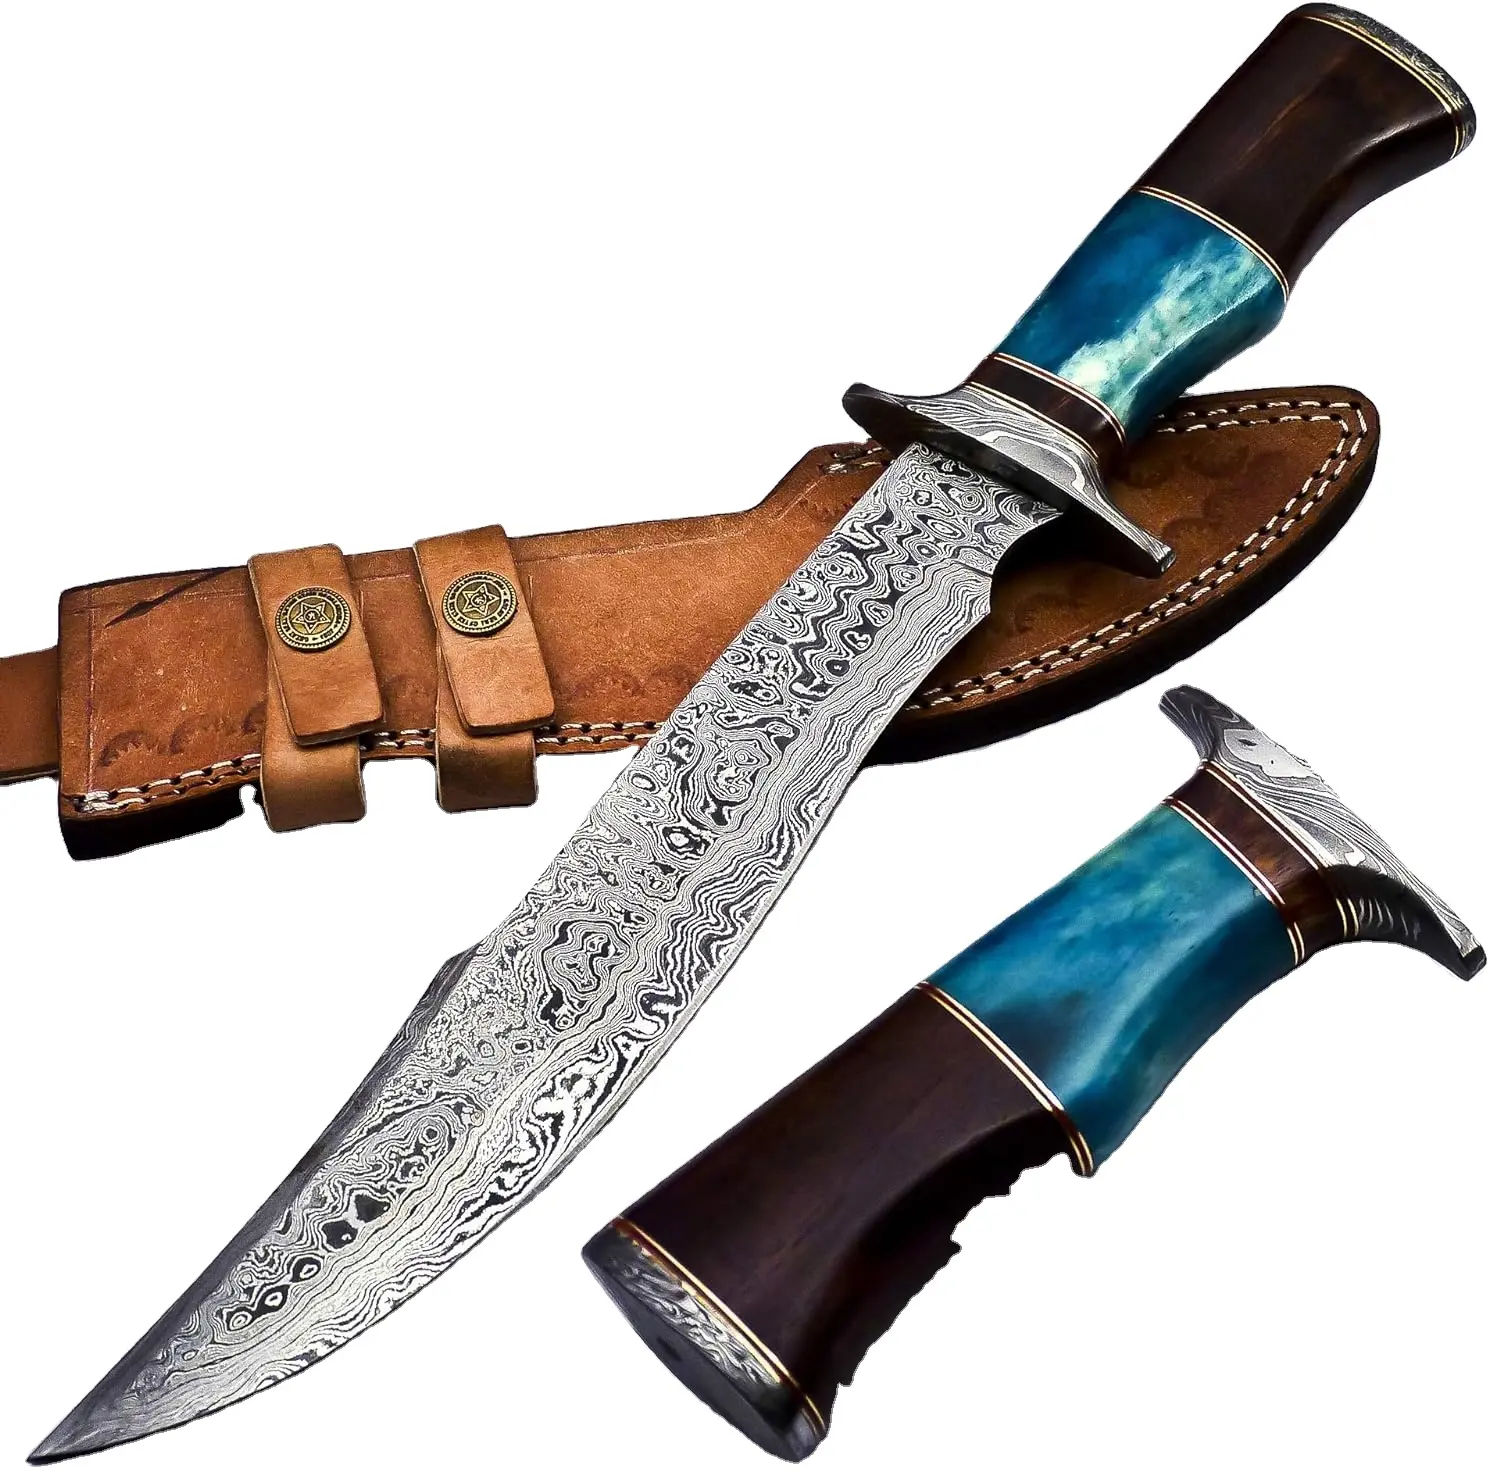 Handgefertigtes Rambo Bowie-Messer aus Kohlenstoffstahl mit Pukka-Hohnhandgriff und Lederhülle Wikingermesser Outdoor-Messer Silberguard